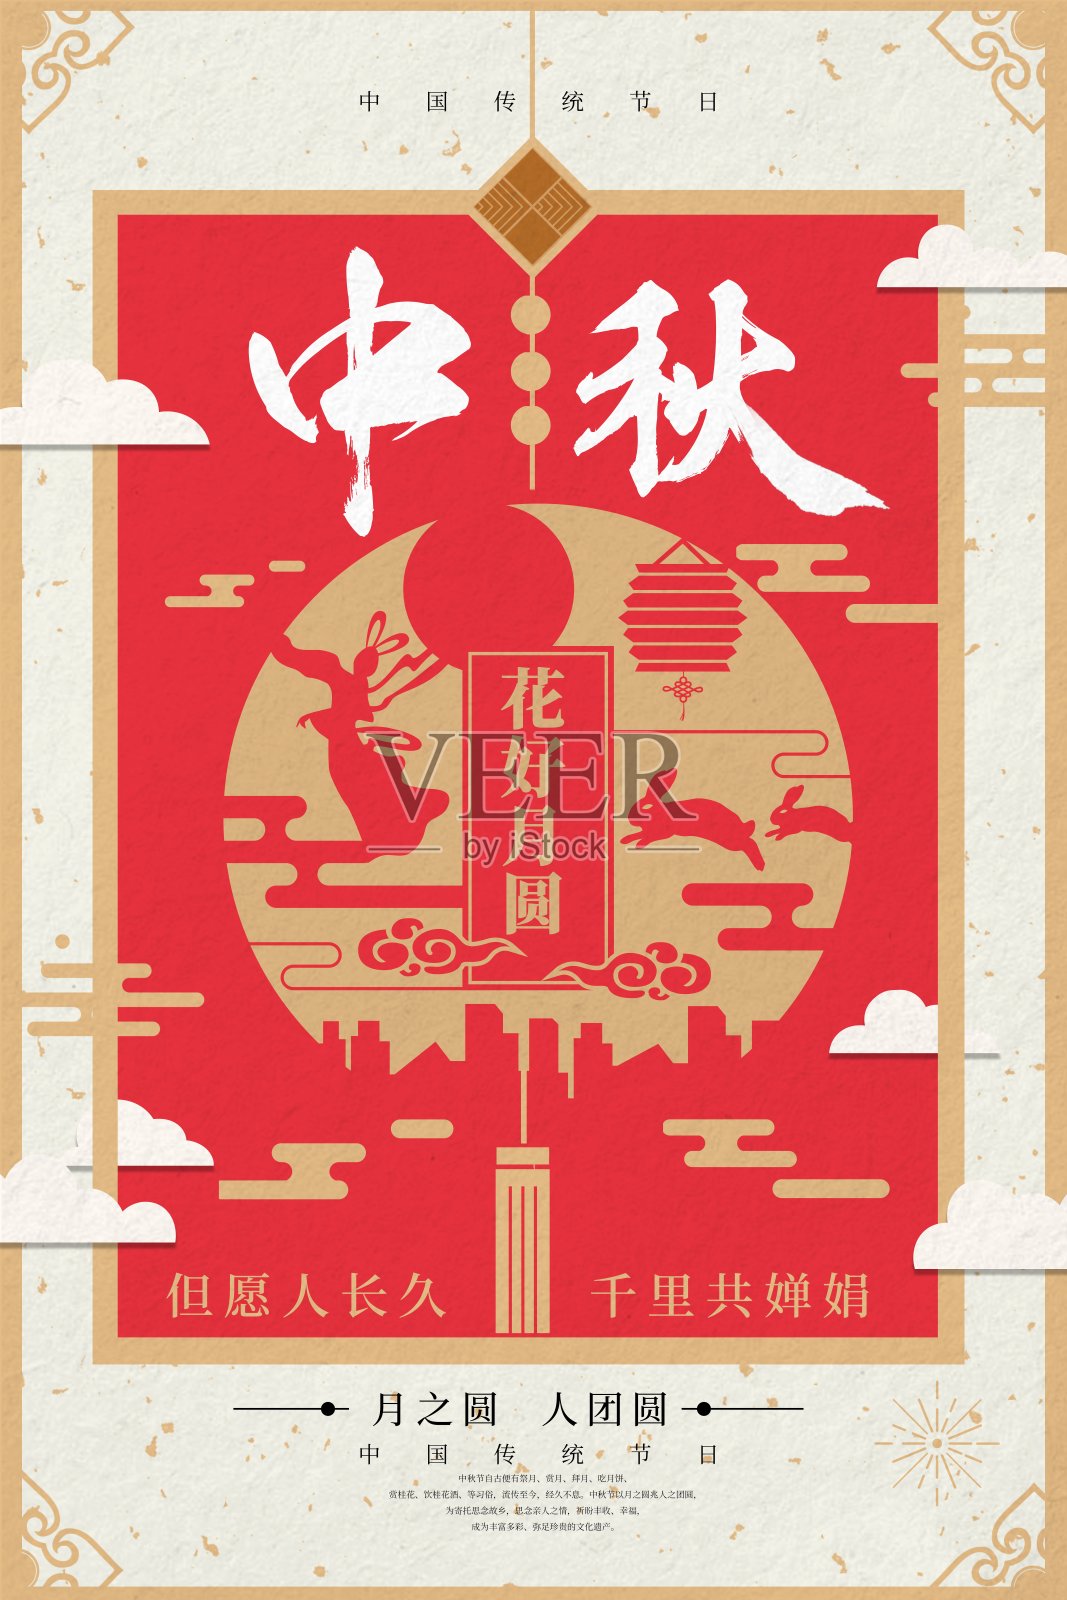 中秋佳节促销海报设计模板素材